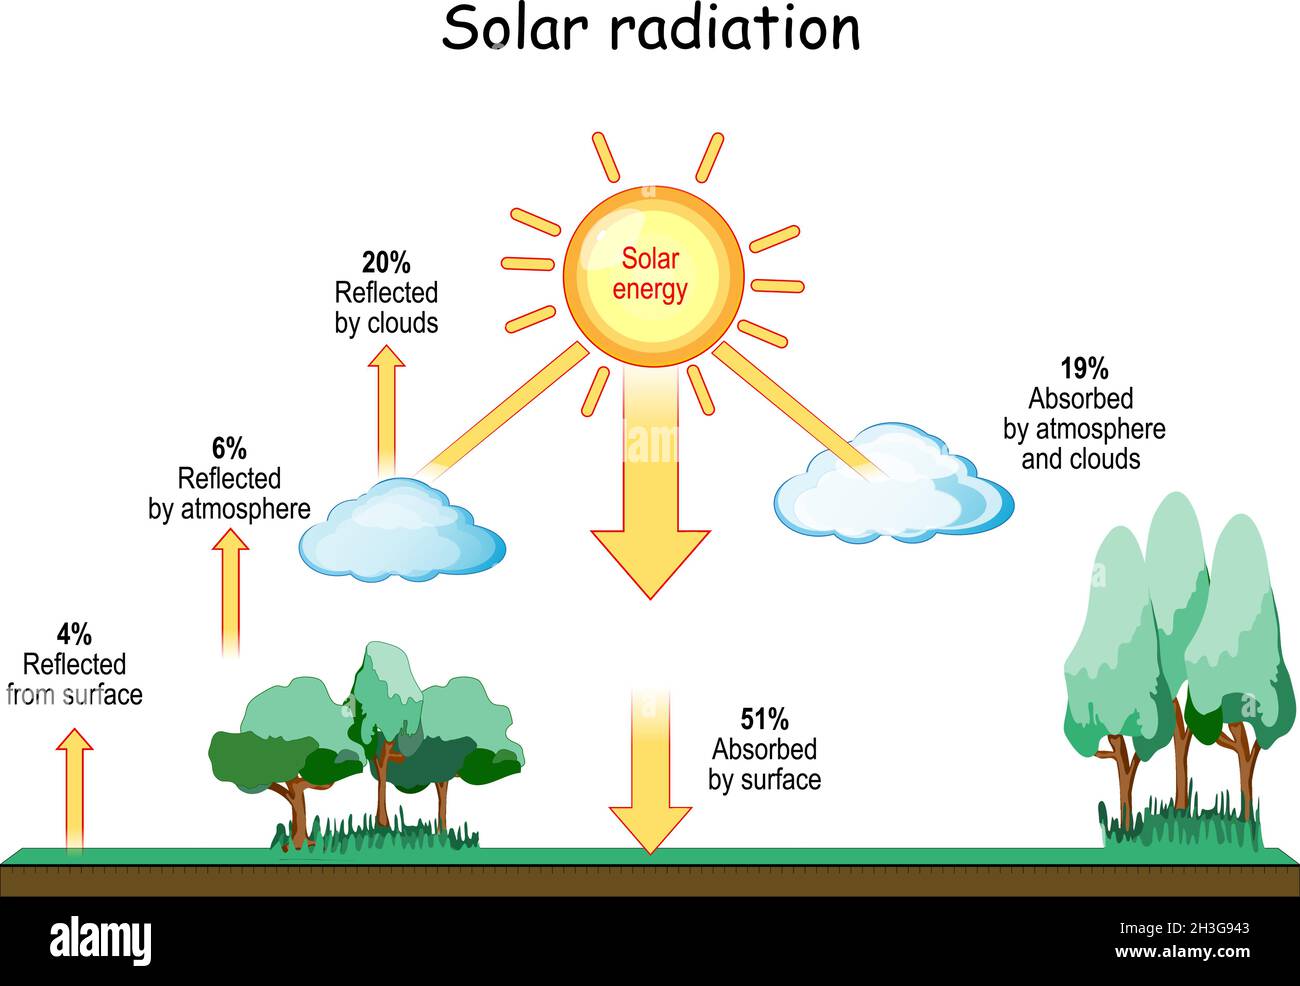 Sonnenstrahlung und Klima. Meteorologie. Sonneneinstrahlung und Wärmebalance der Erde. Terrestrische Strahlung. Sonnenwellen. vektor Stock Vektor